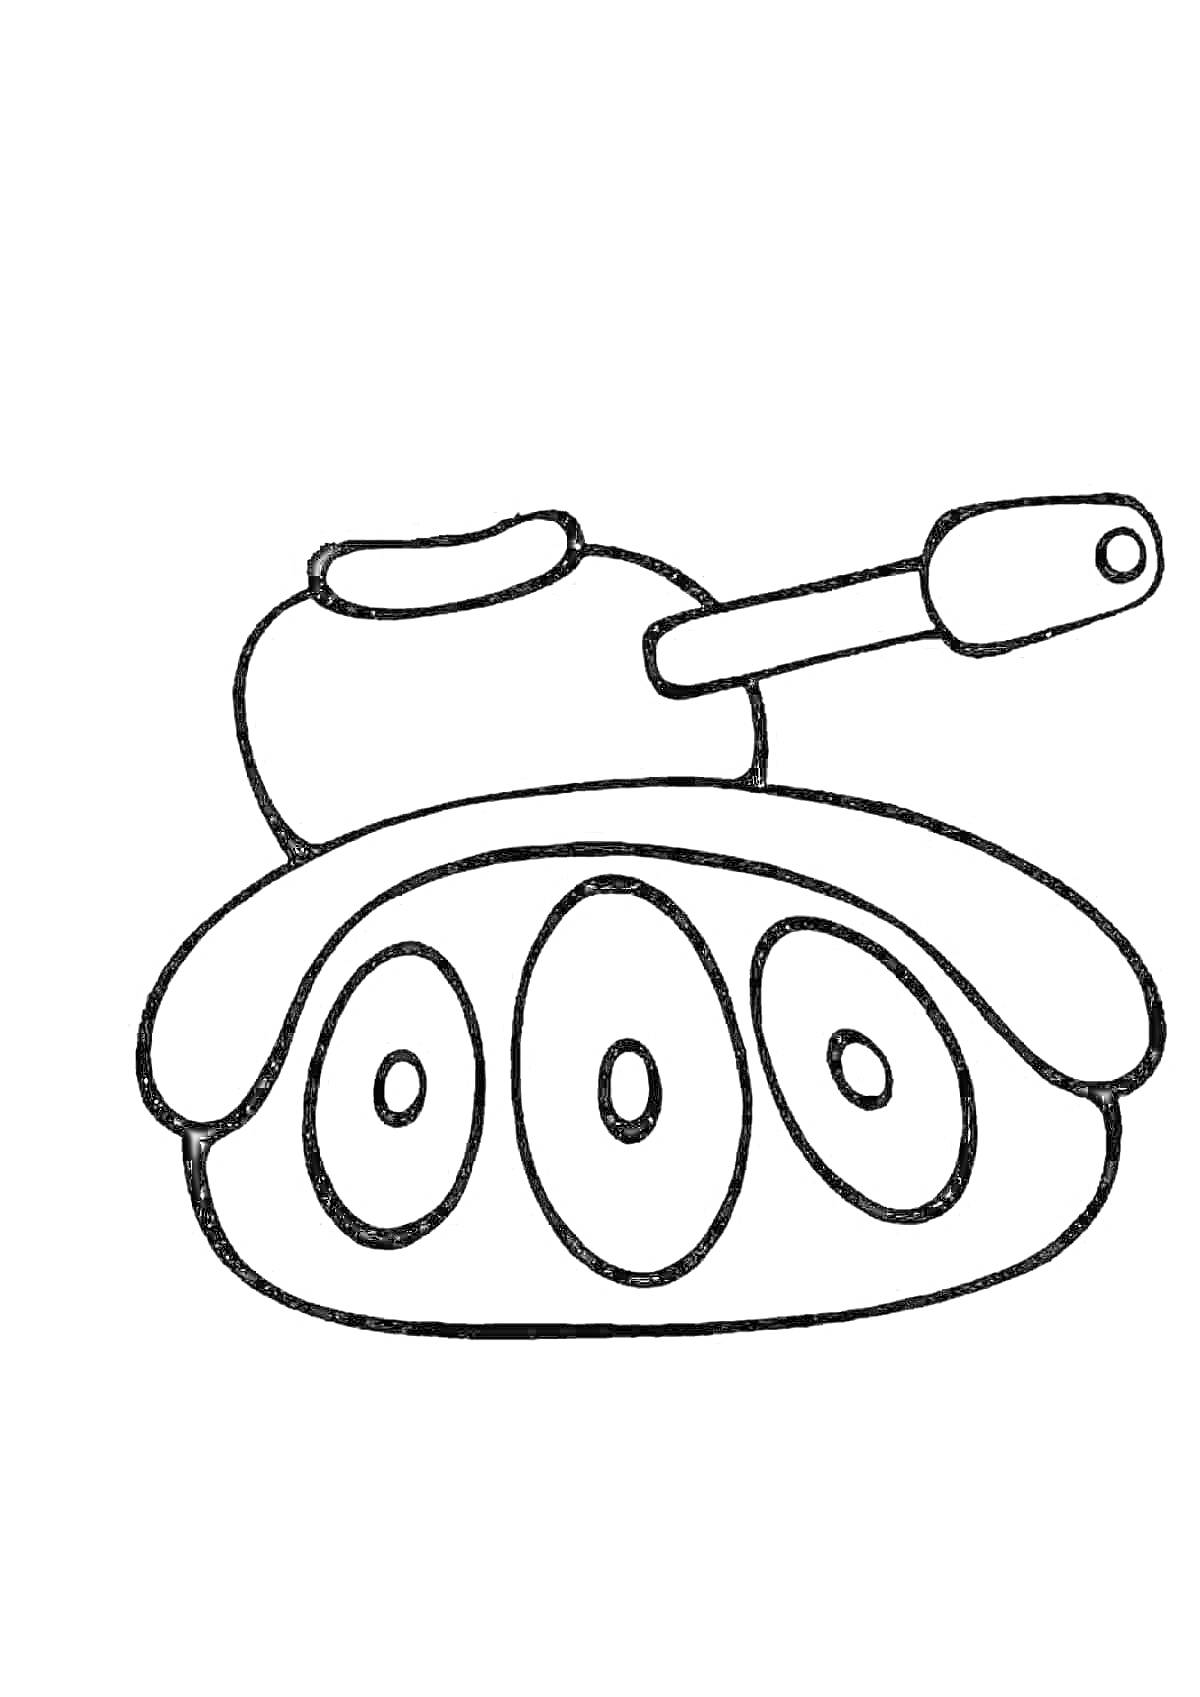 Раскраска Детская раскраска с танком, изображение игрушечного танка с тремя круглыми гусеницами и пушкой